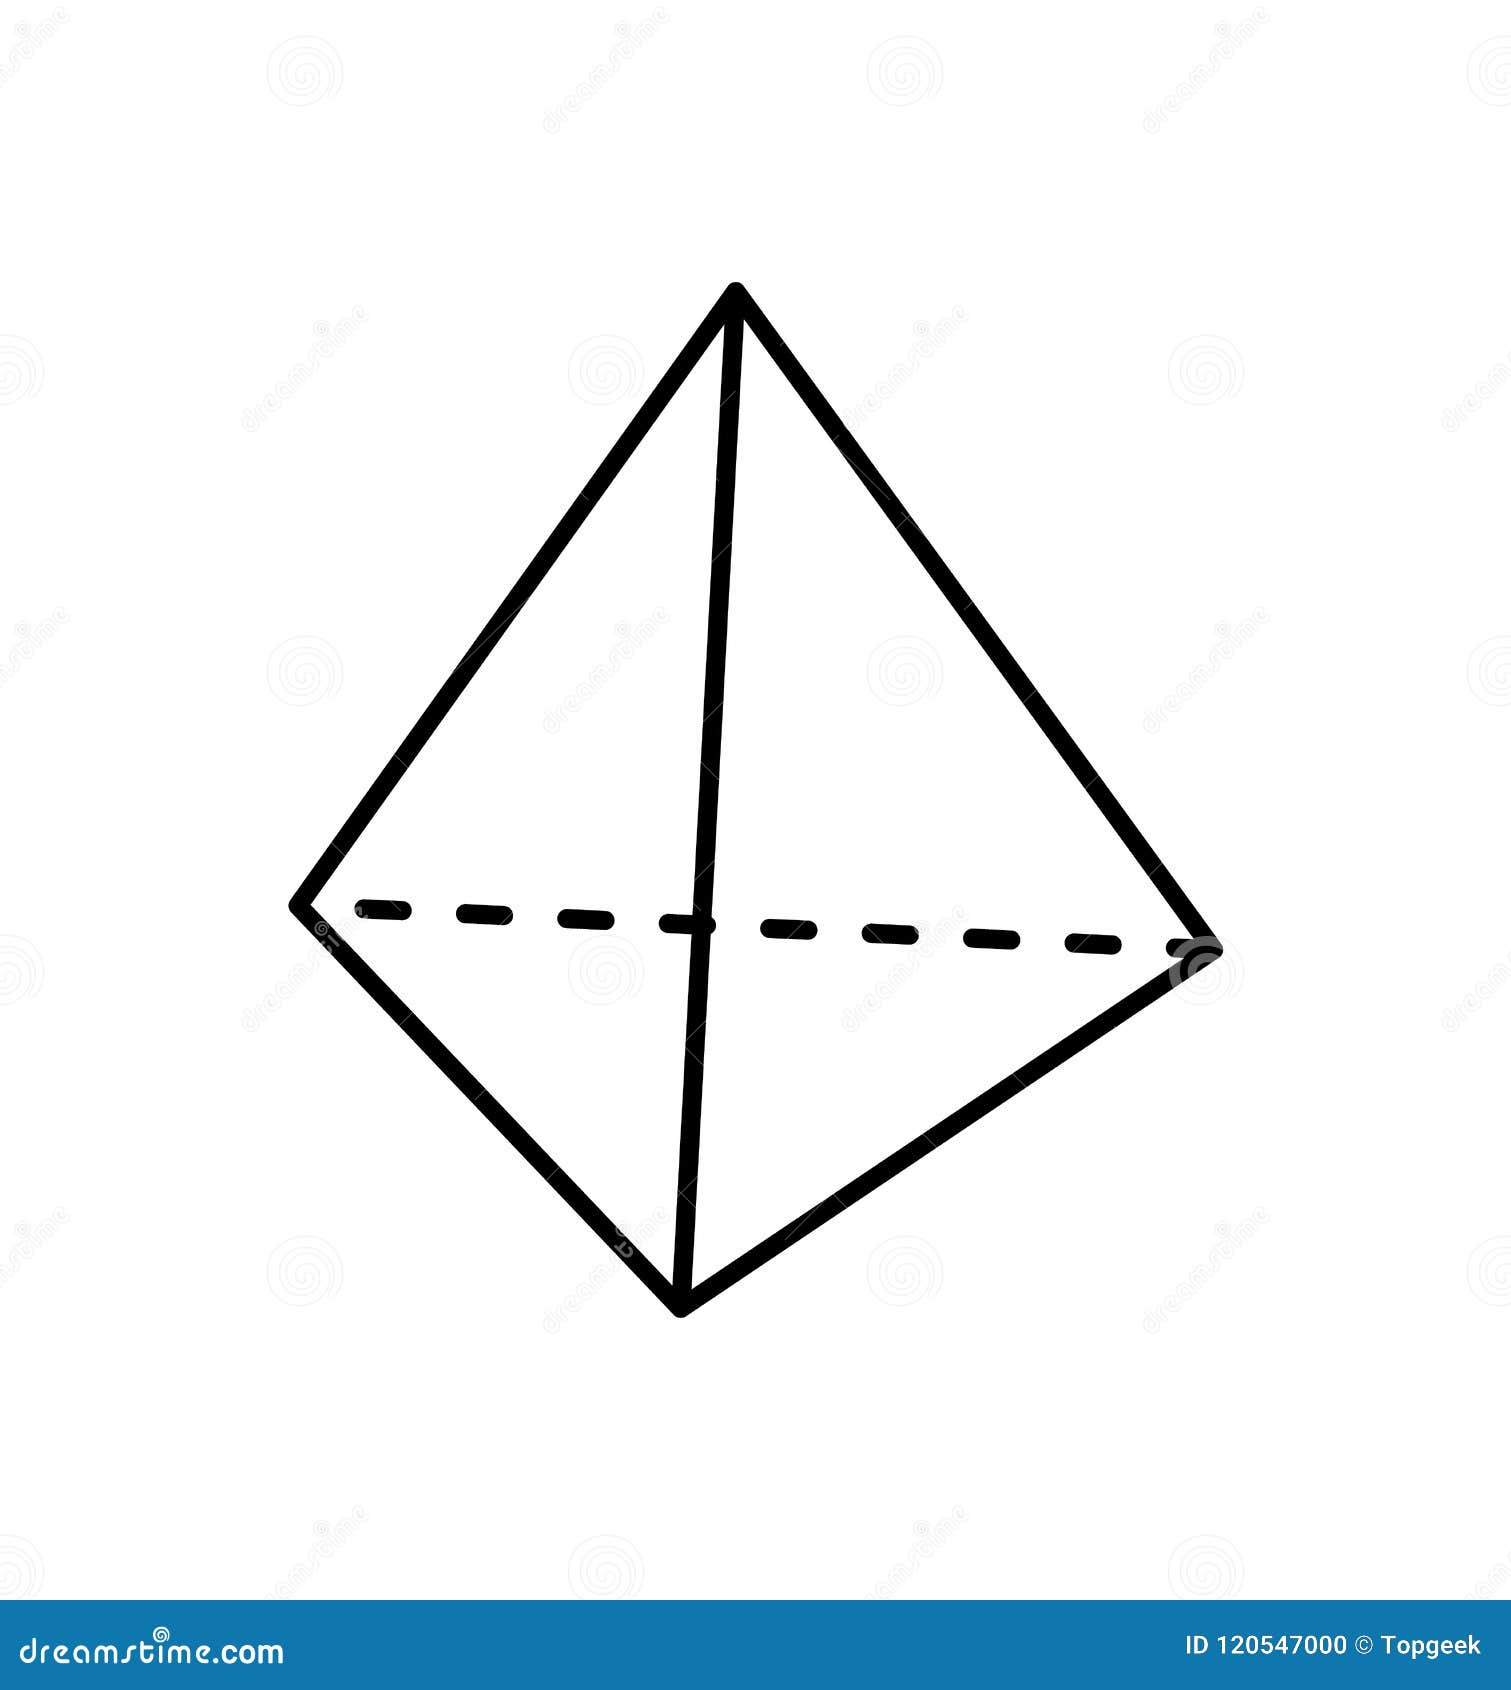 什么是四棱锥的侧高或者说是斜高？ - 知乎